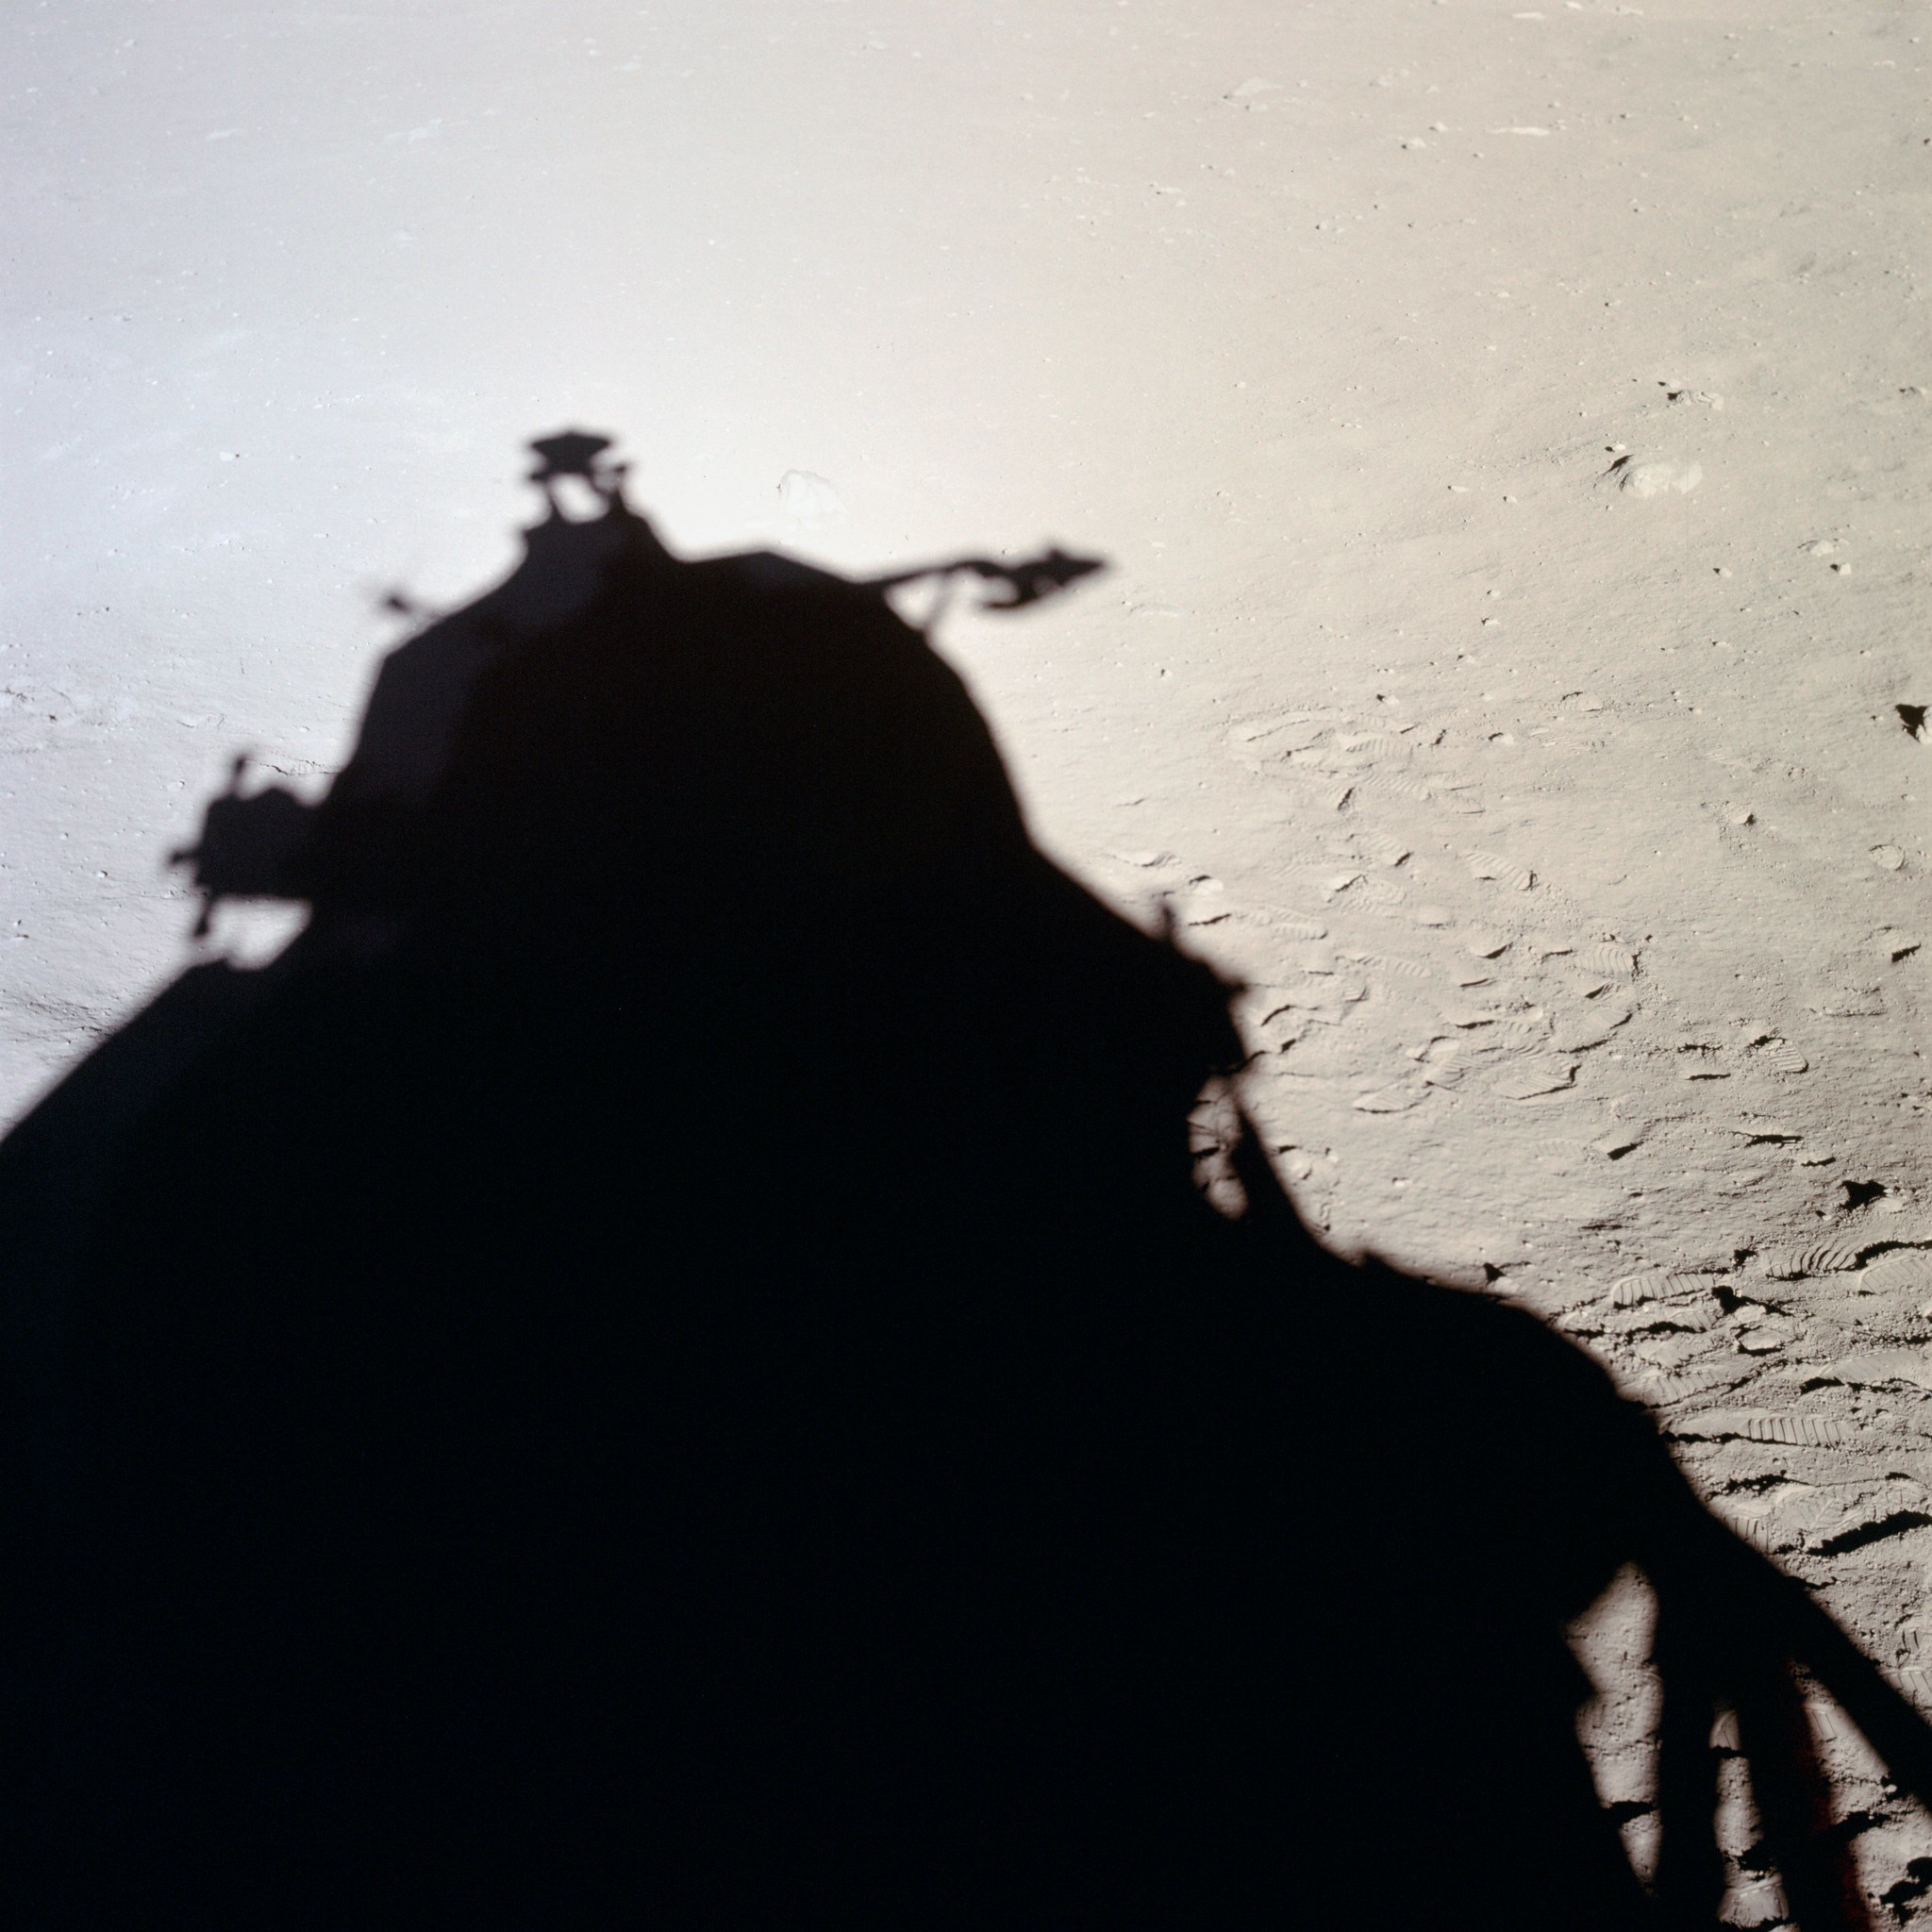 Ombre portée du module lunaire (LM) de Apollo 11 silhouette sur la surface lunaire, prise de vue interieure du LM, lumière solaire © NASA - as11-37-5475 - 20 Juillet 1969